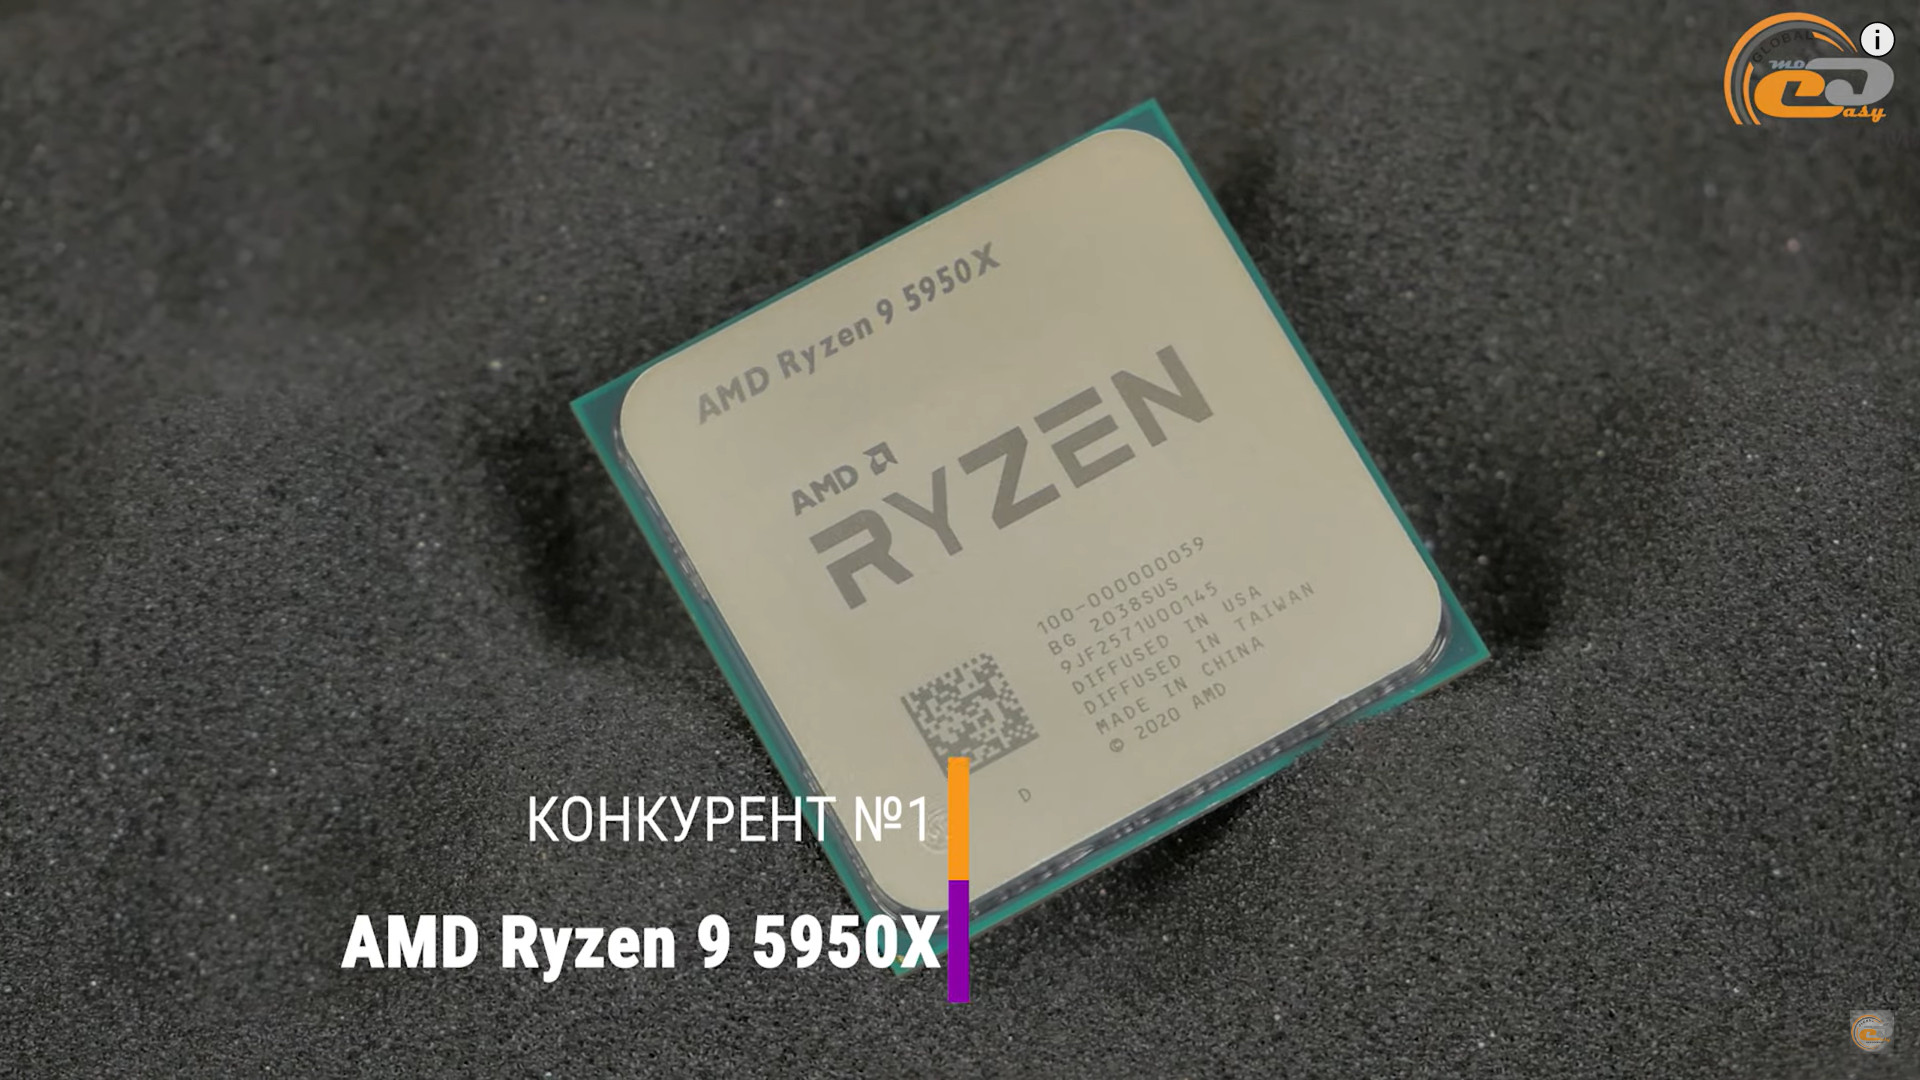 Ryzen 7950x oem. Процессор i9. Ryzen 7900x. Ryzen 9 7950x. Ryzen 9 7900x.